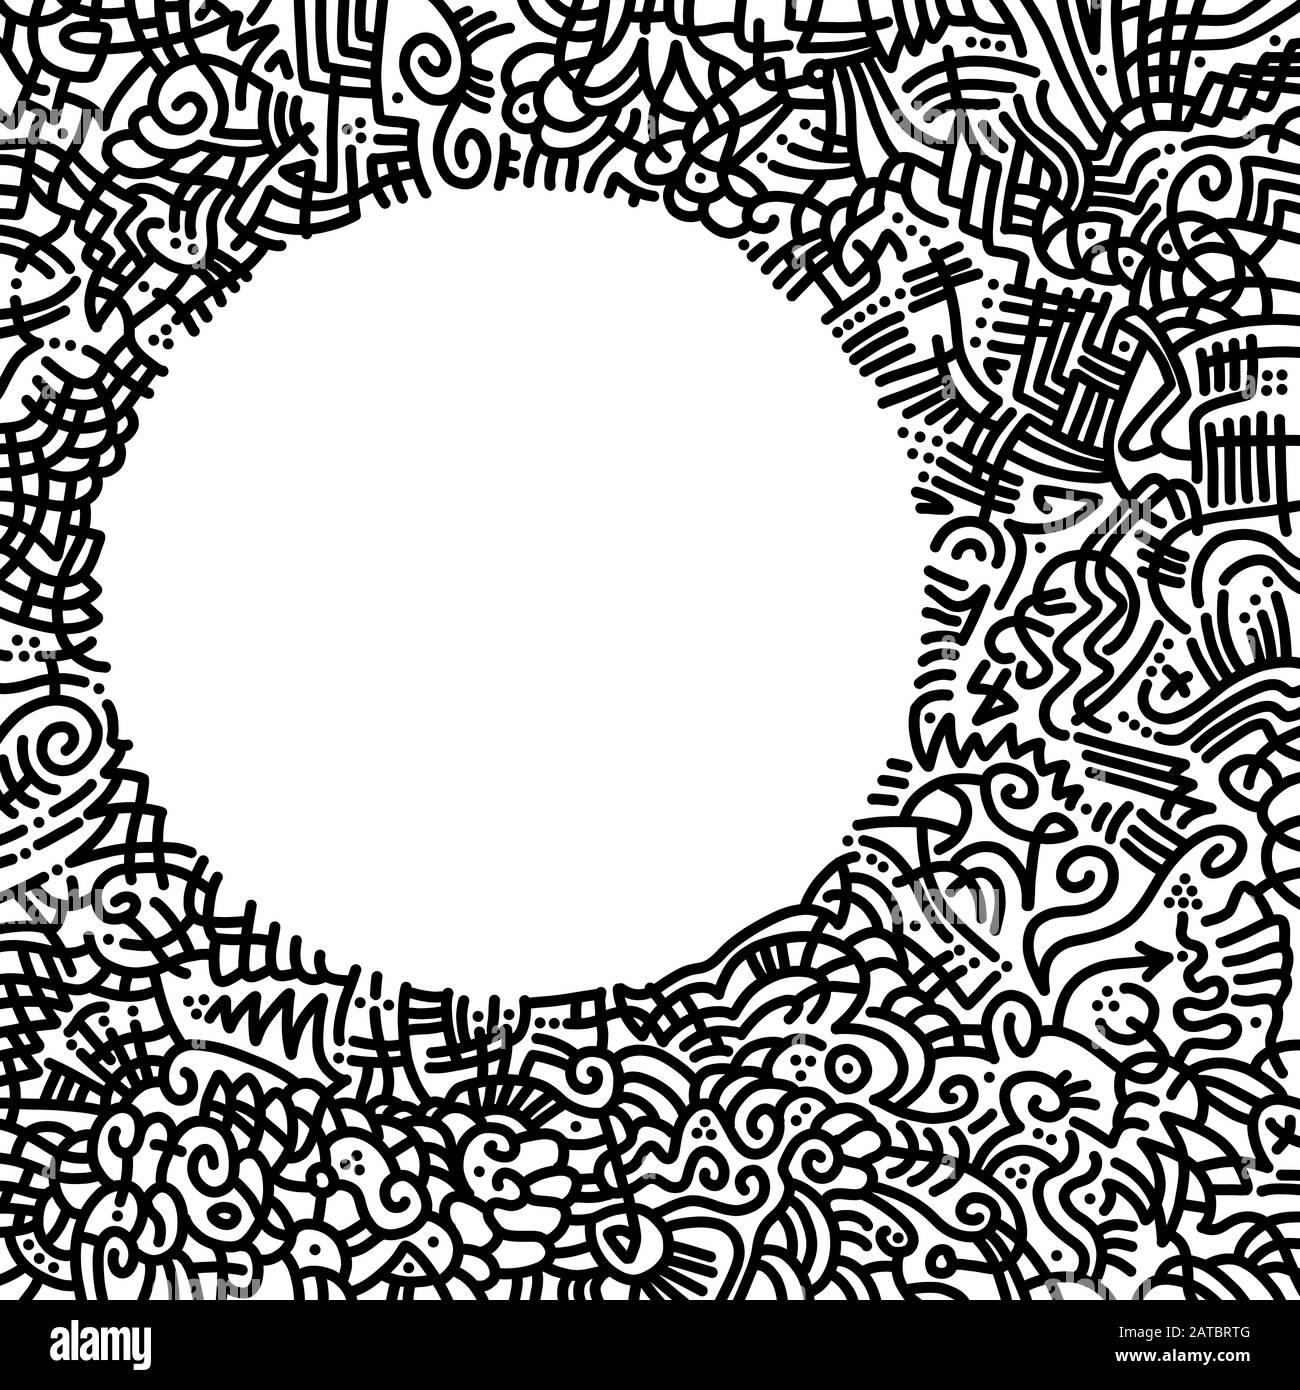 Handgezeichneter, quadratischer Rahmen mit abstrakten Mustern, aus schwarzen Kurven, Linien und Punkten und einem weißen Kreis, der freien Raum formt. Stockfoto